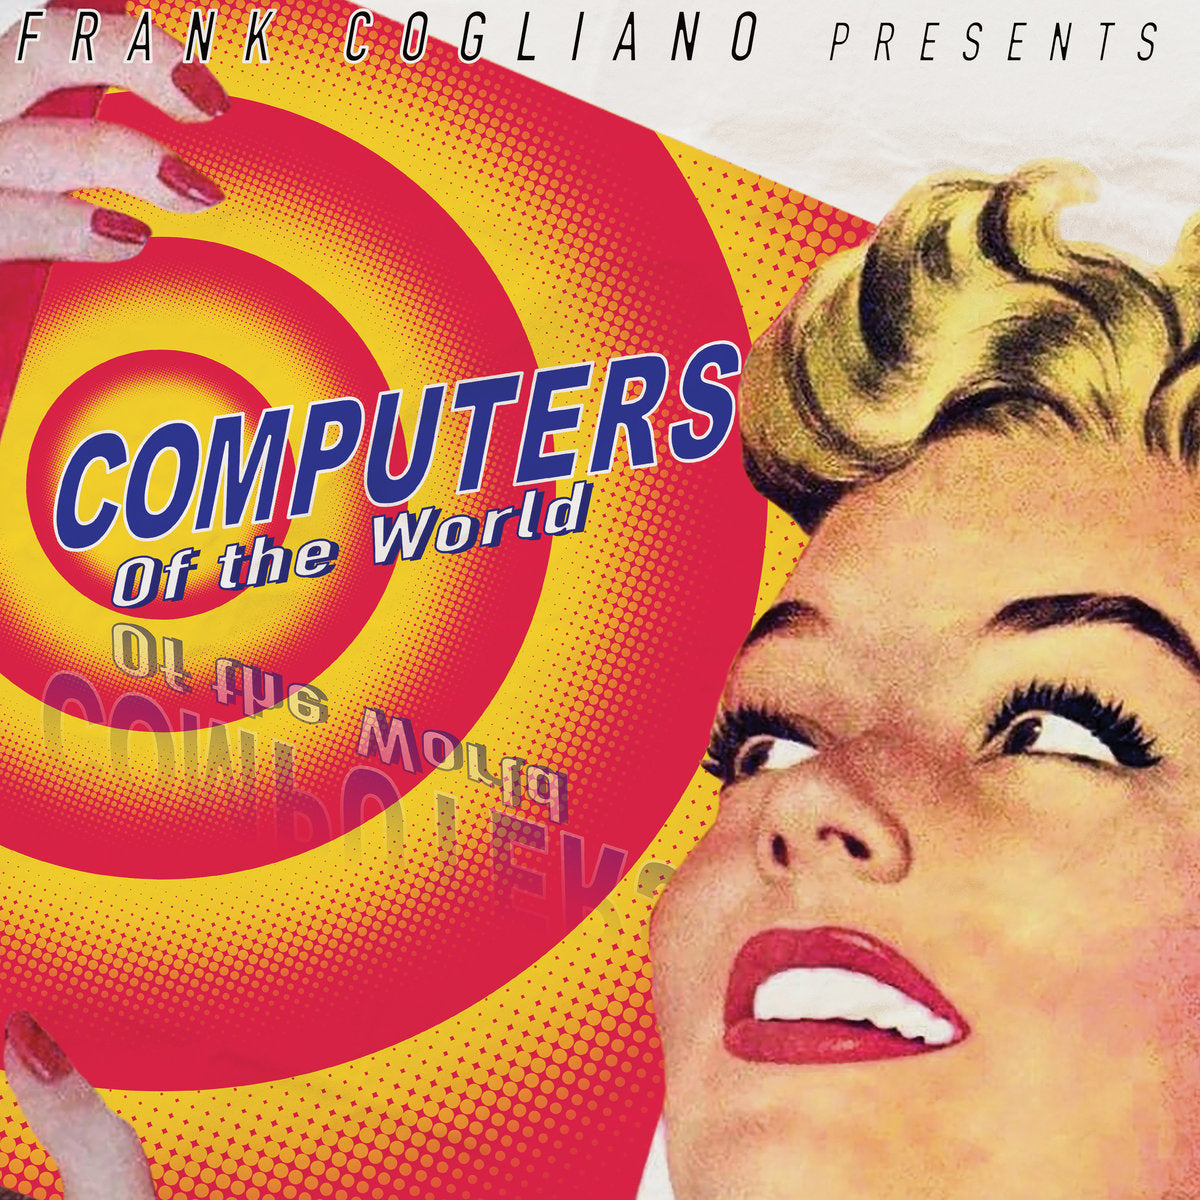 Cogliano, Frank "Computers of the World"